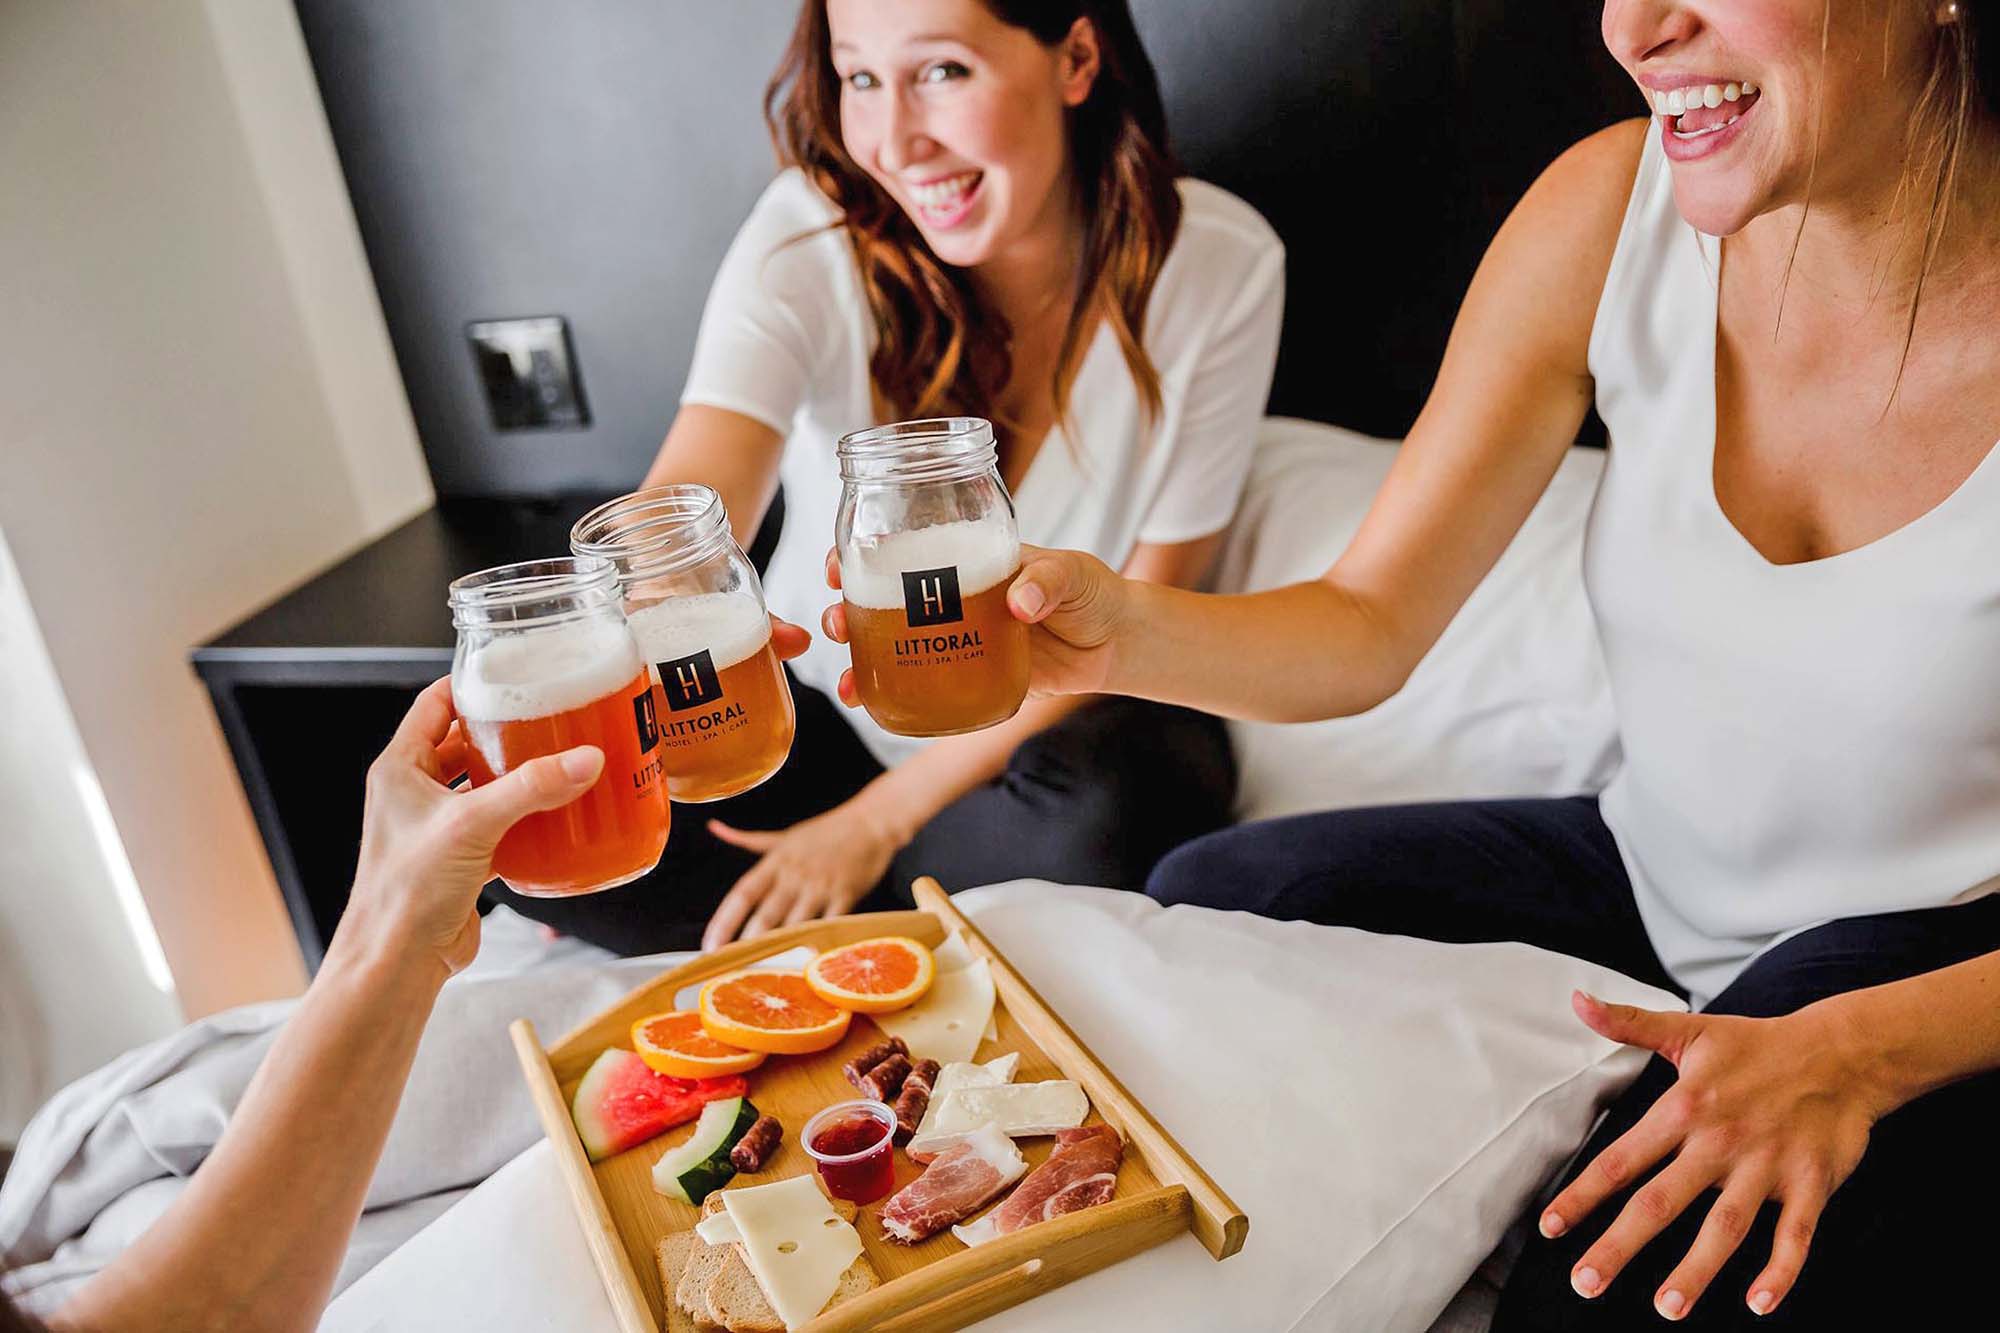 Groupe de femmes ayant du plaisir autour d'une bière dans leur chambre d'hôtel